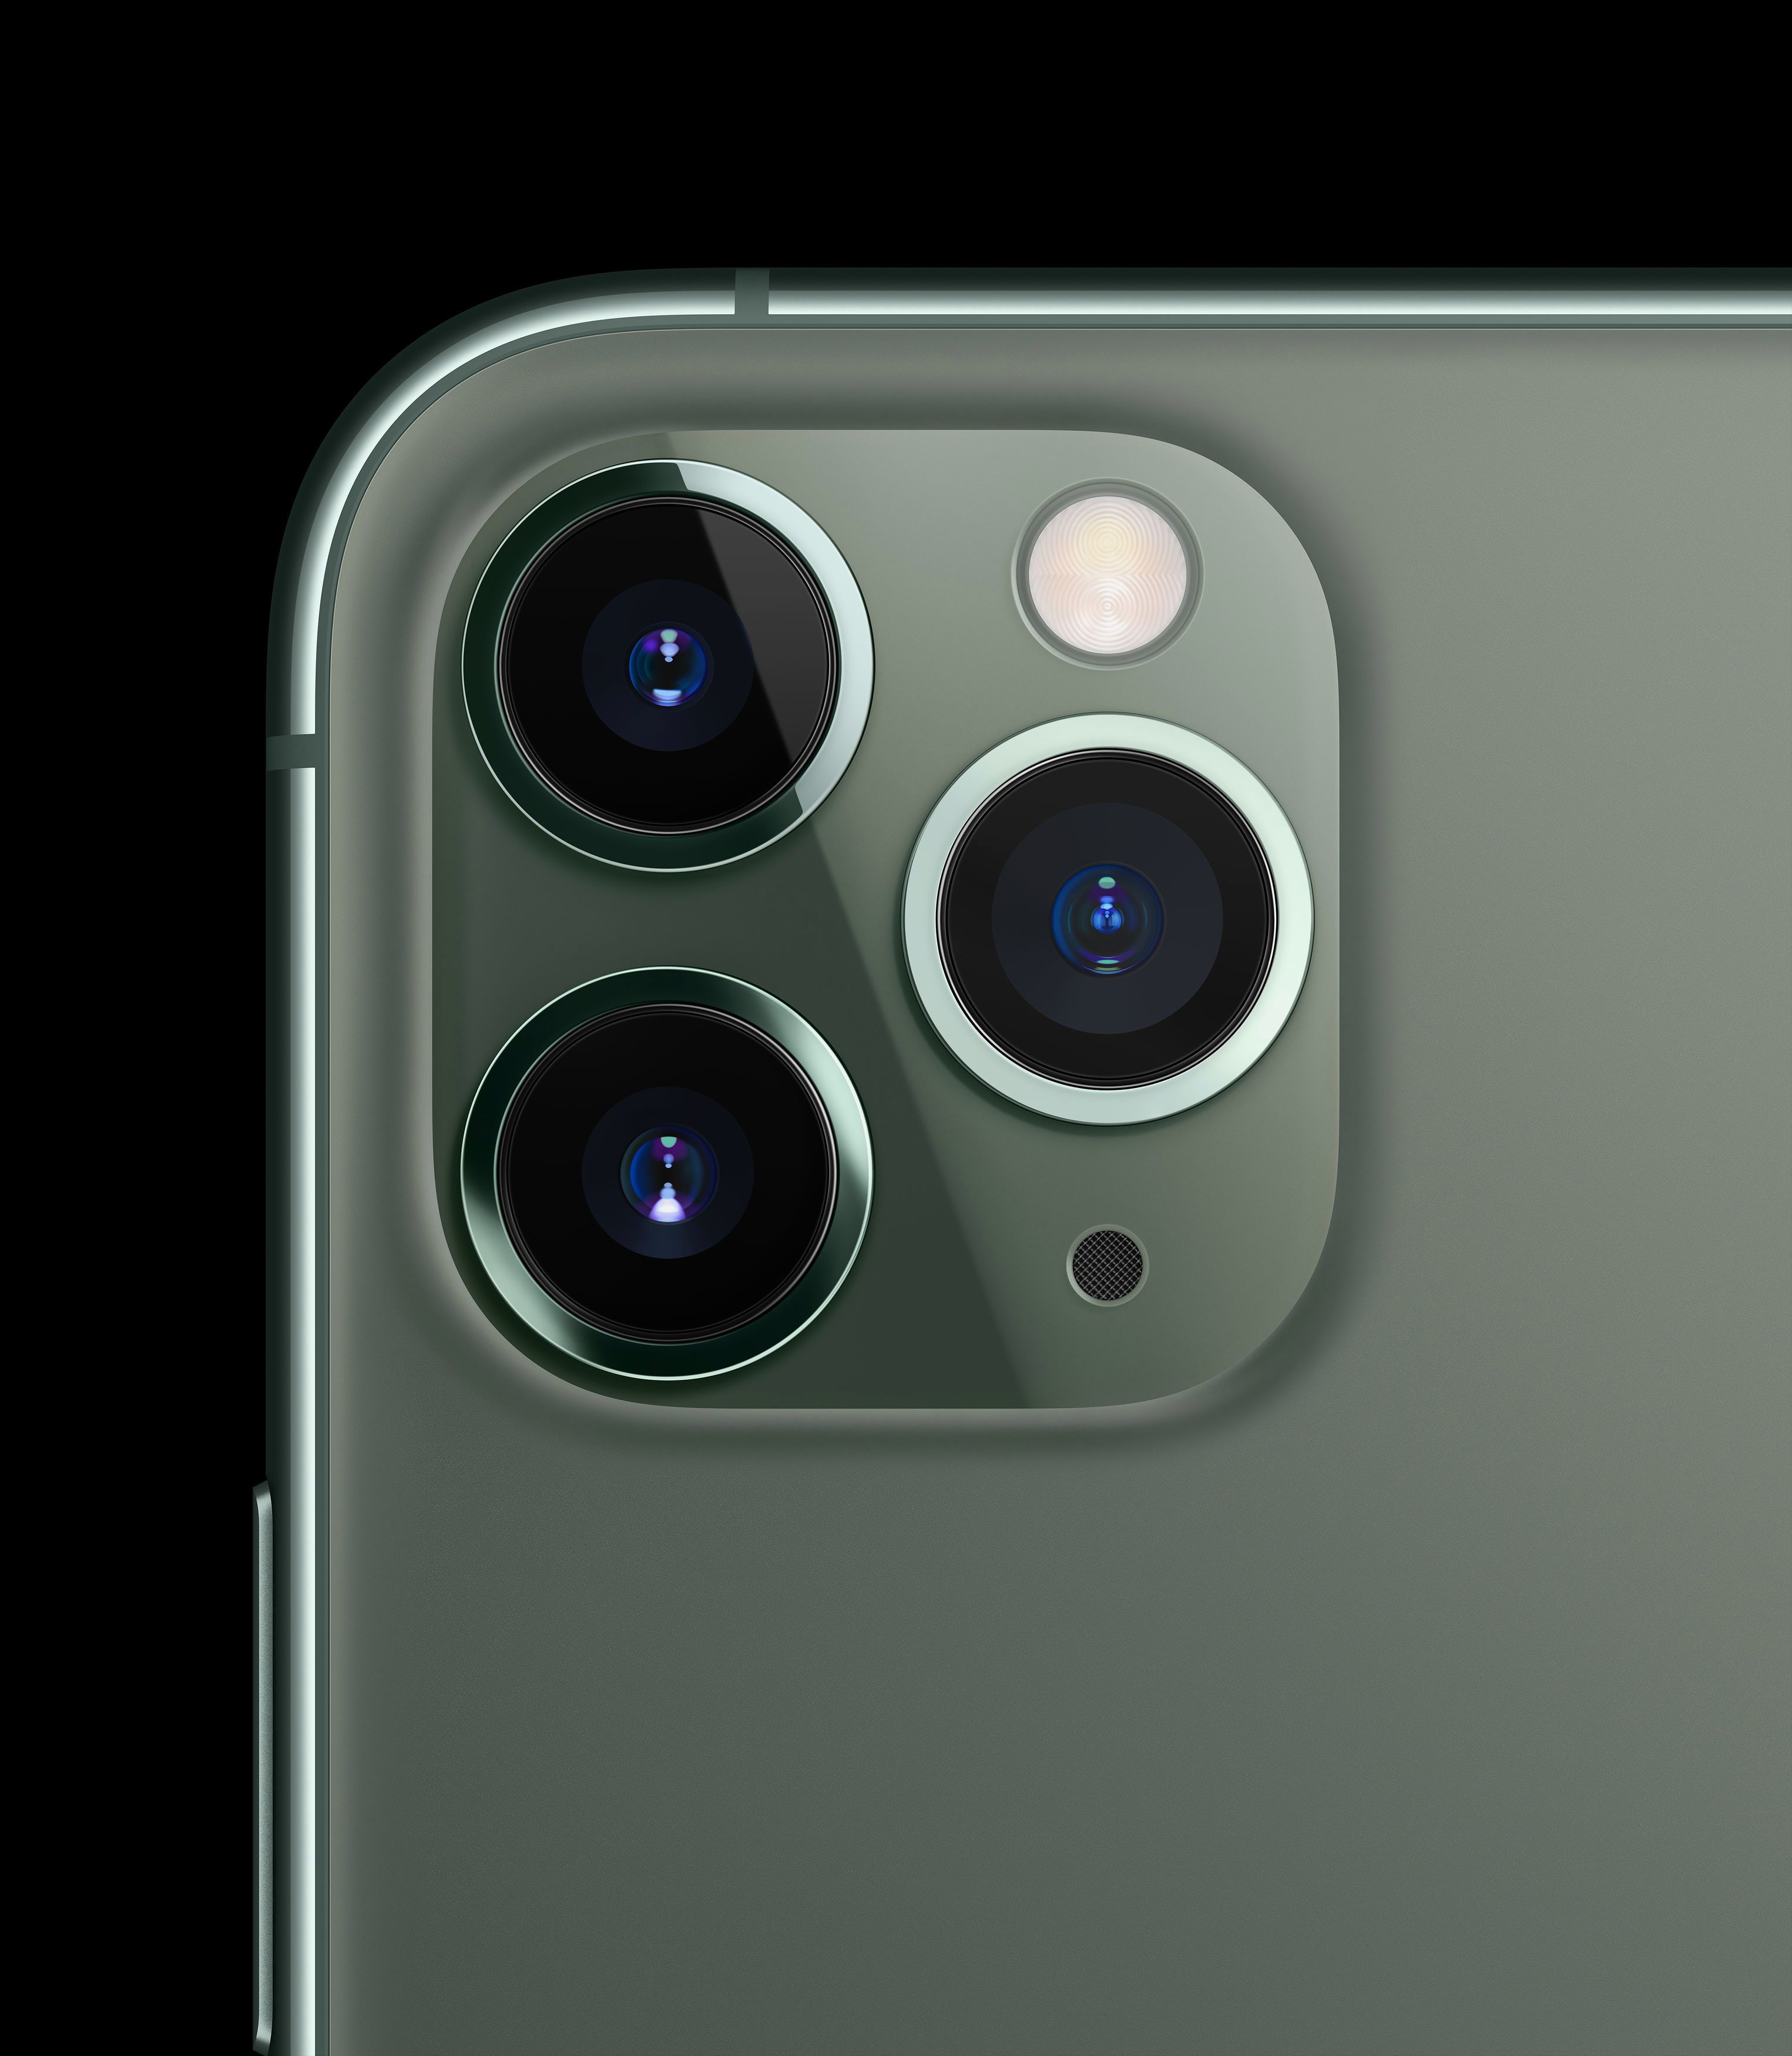   Design iPhone 11 Pro har en 12-megapixel telefotokamera, med en bländare på f/2.0 som är större, brännvidden är 52 mm och likaså OIS